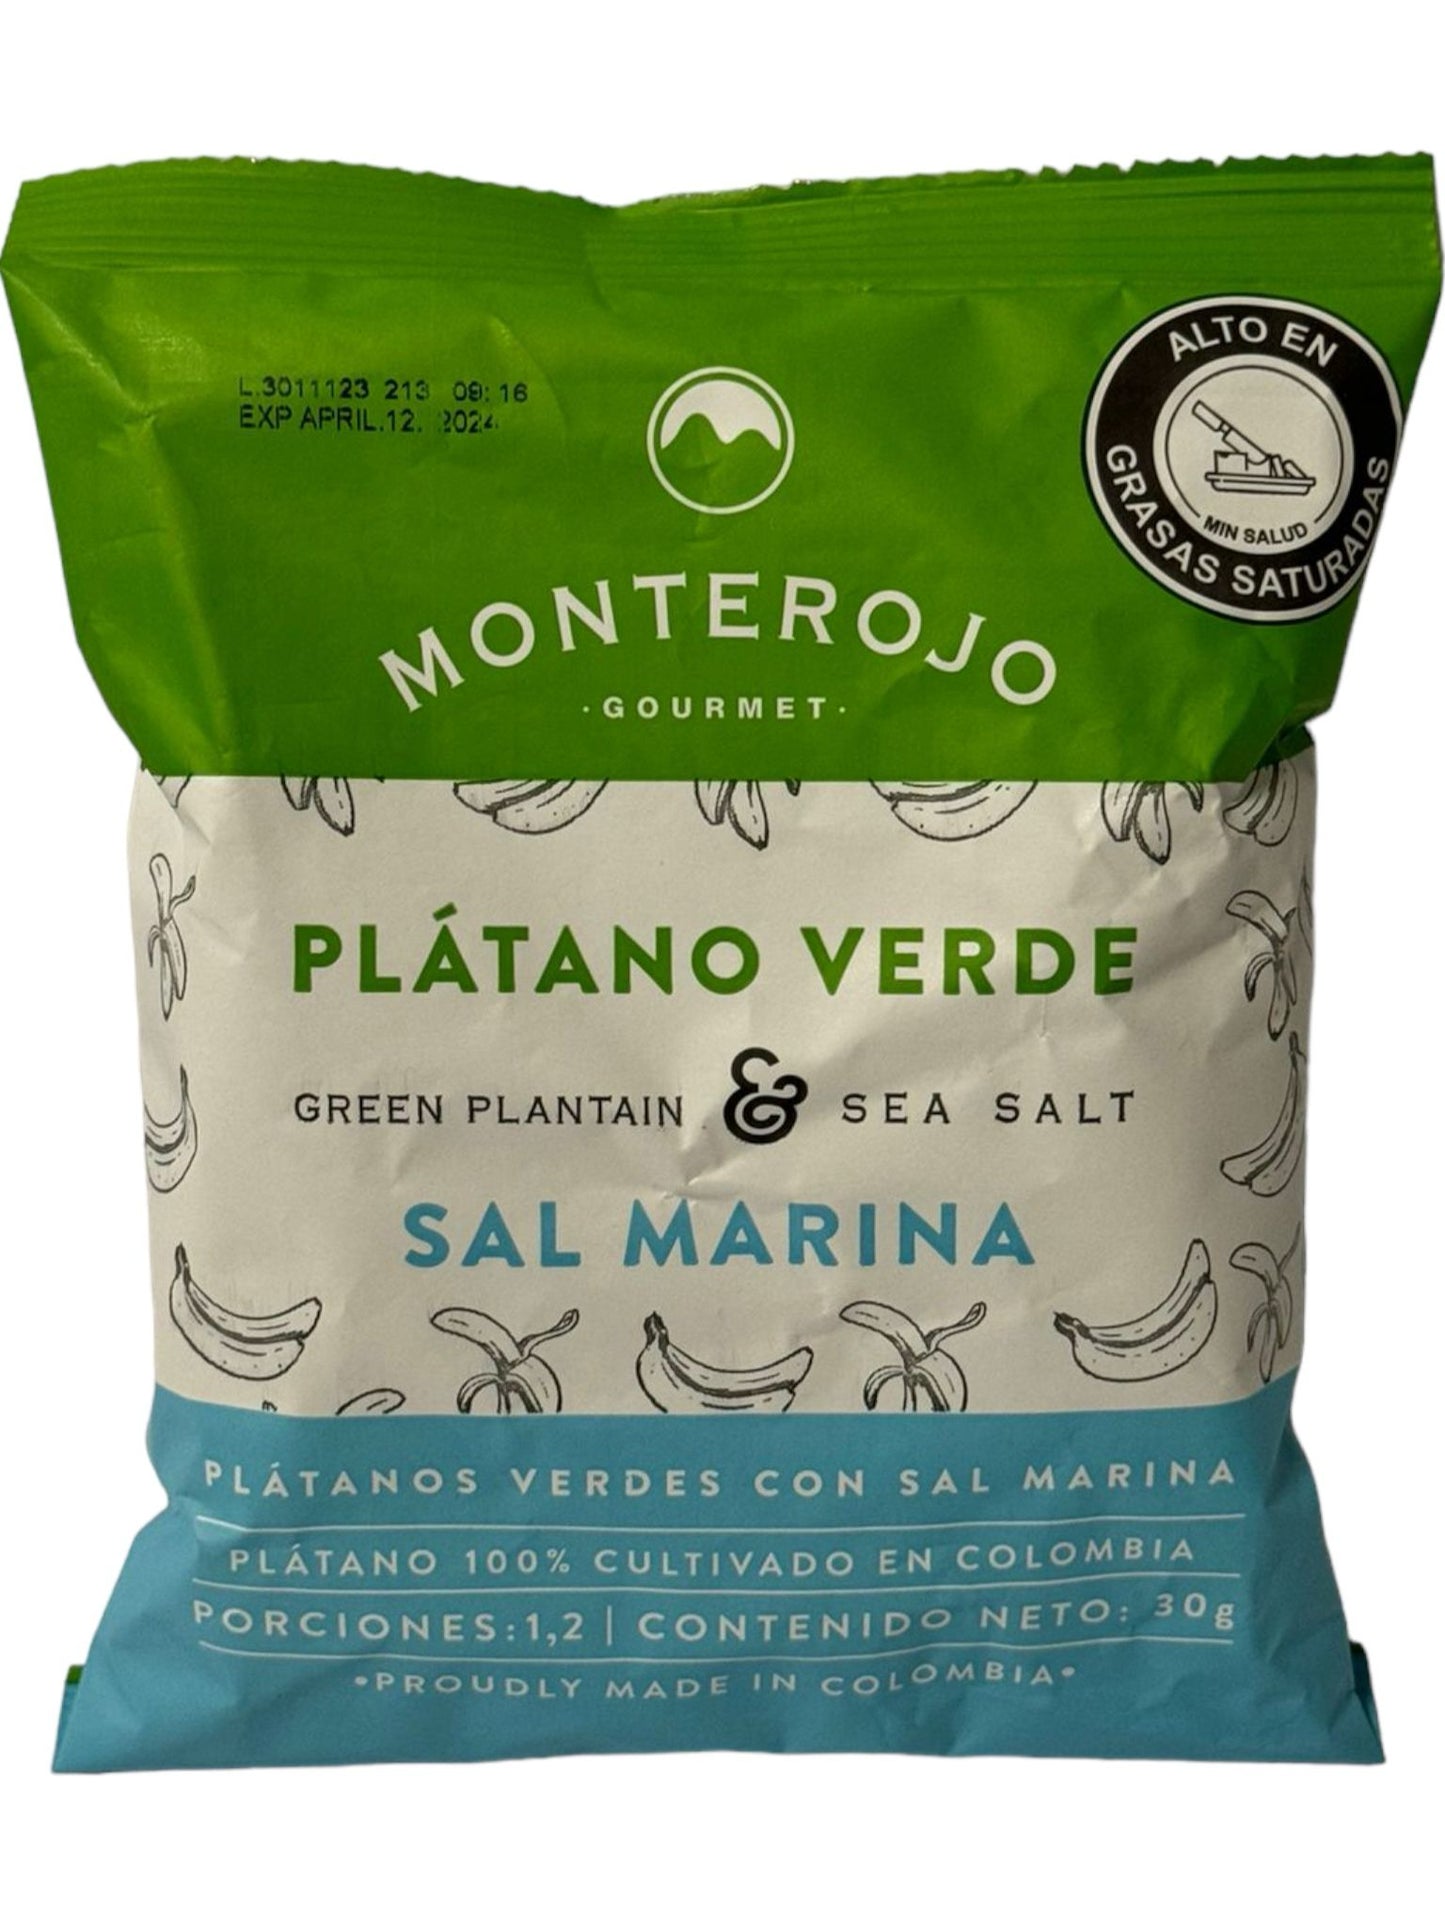 Monterojo Plantano Verde Sal Marina Green Plantain Sea Salt 30g